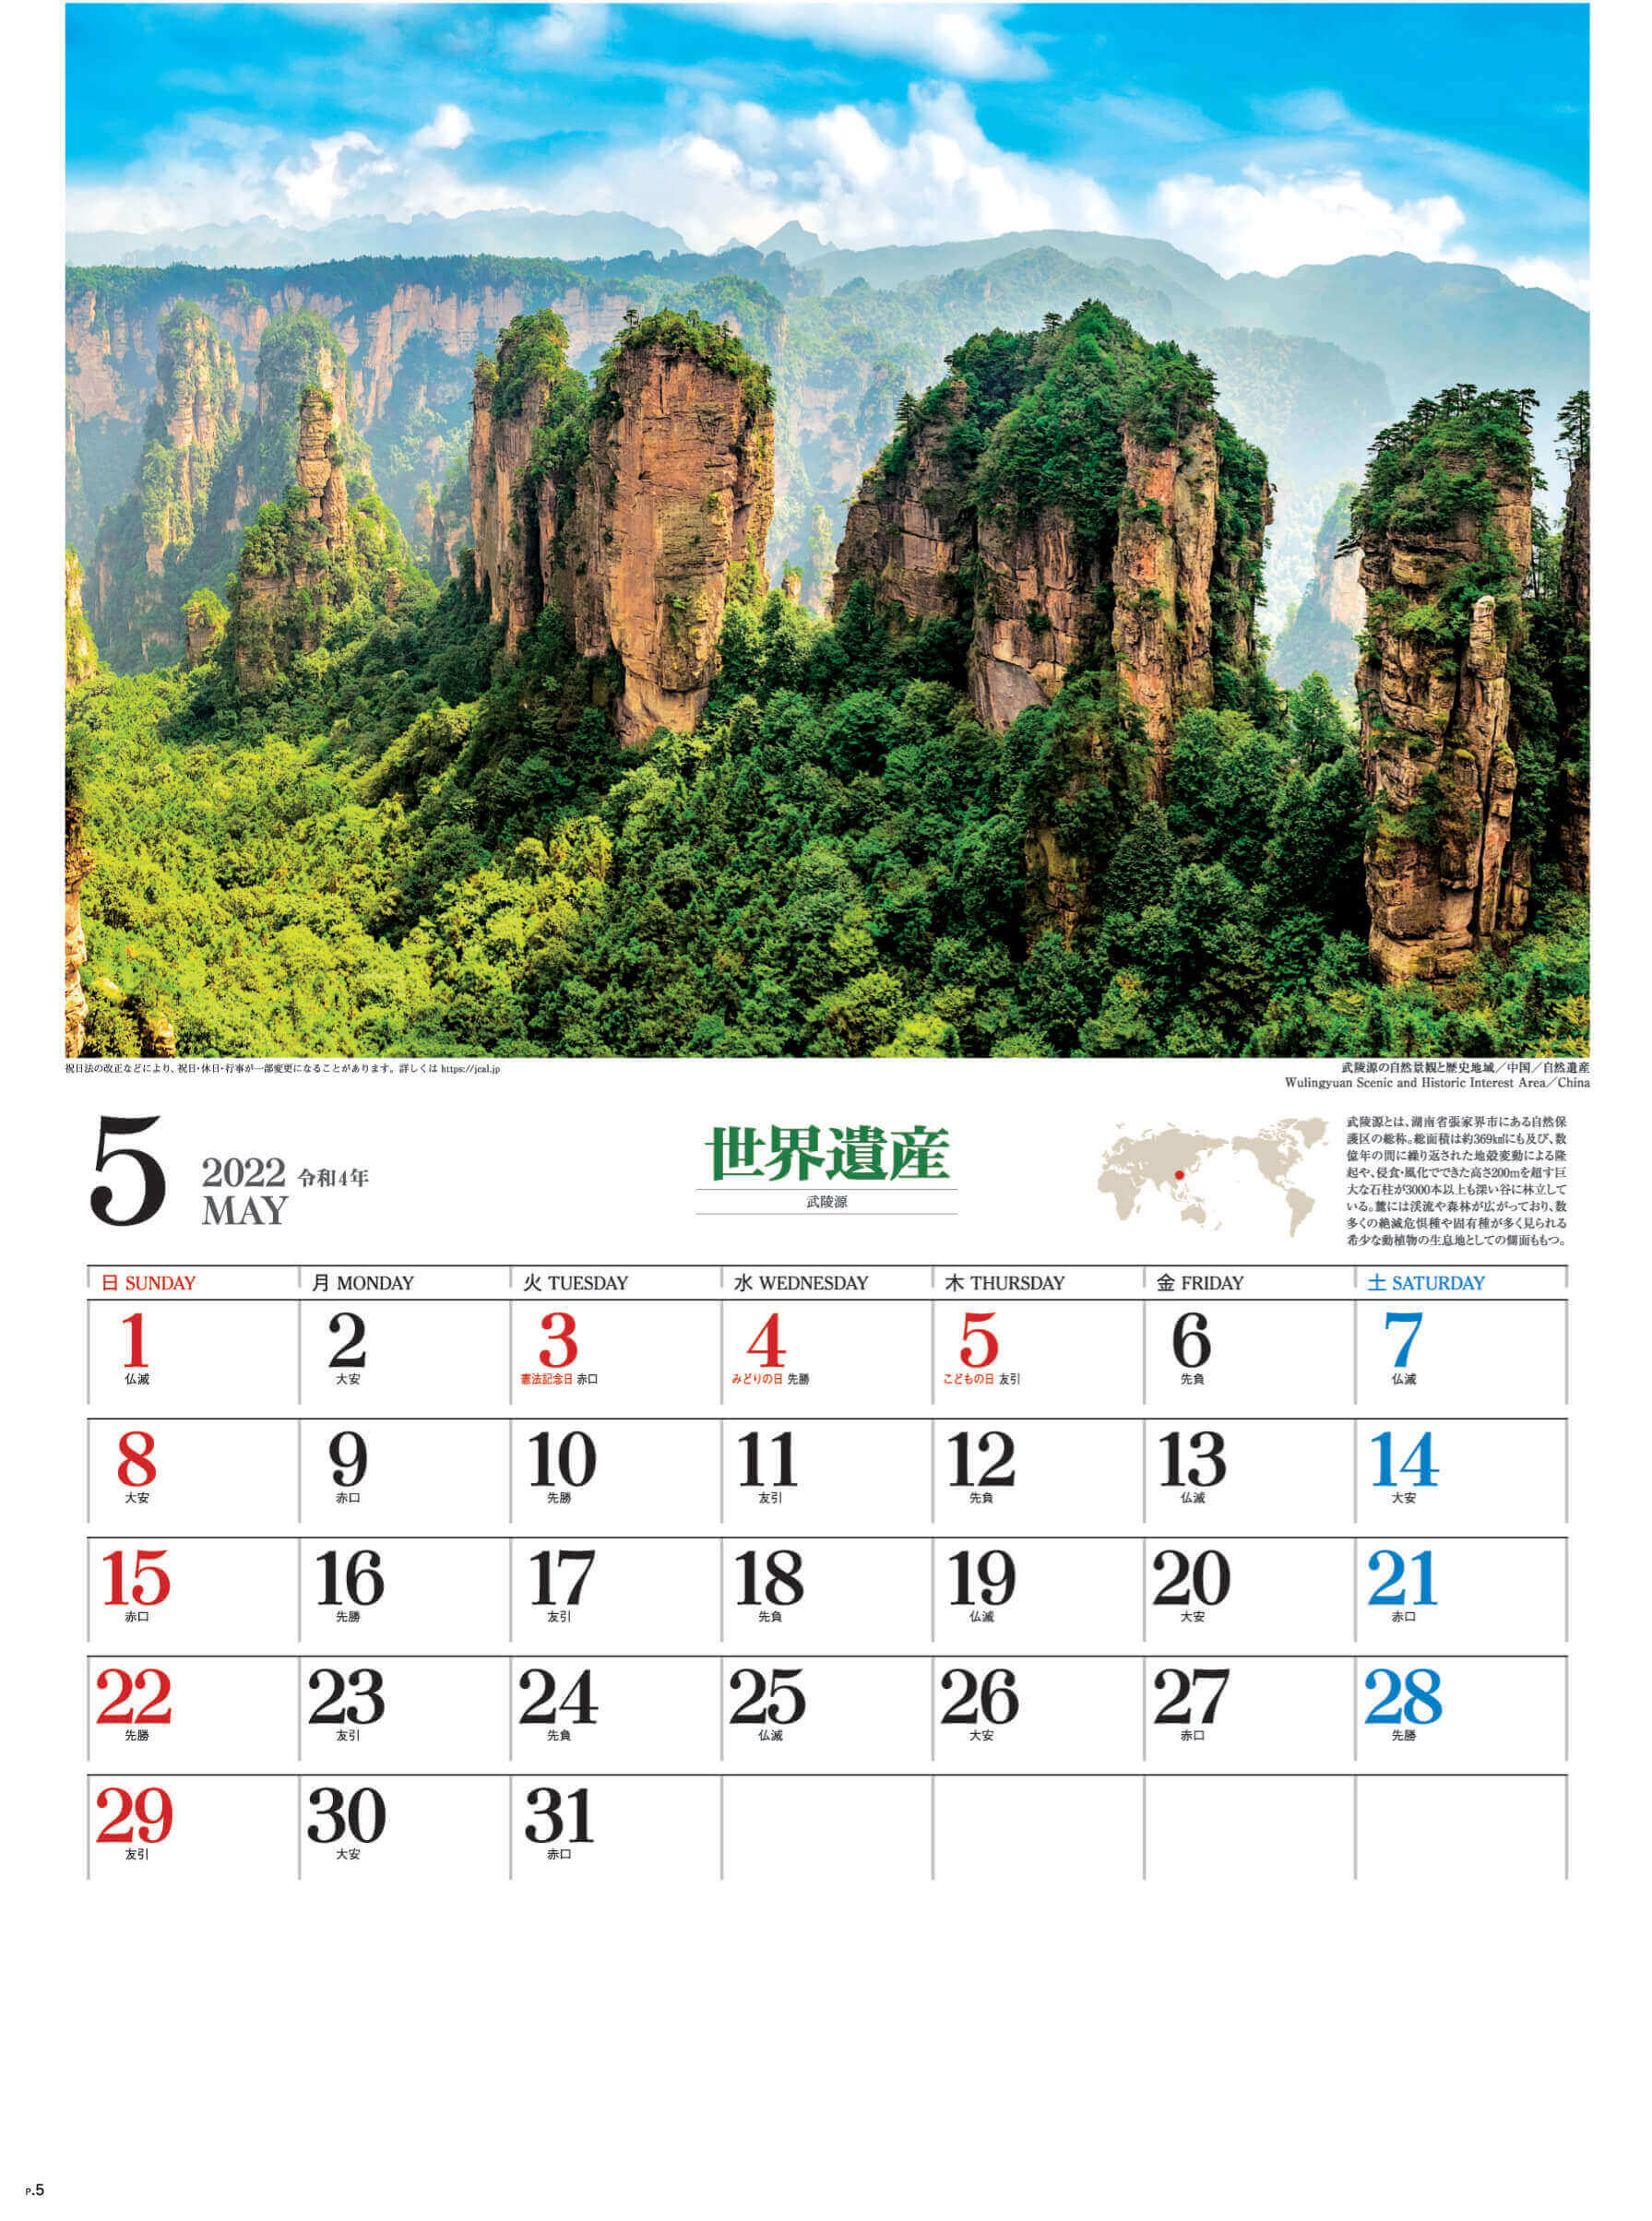 5月 武陵源 中国 ユネスコ世界遺産 2022年カレンダーの画像